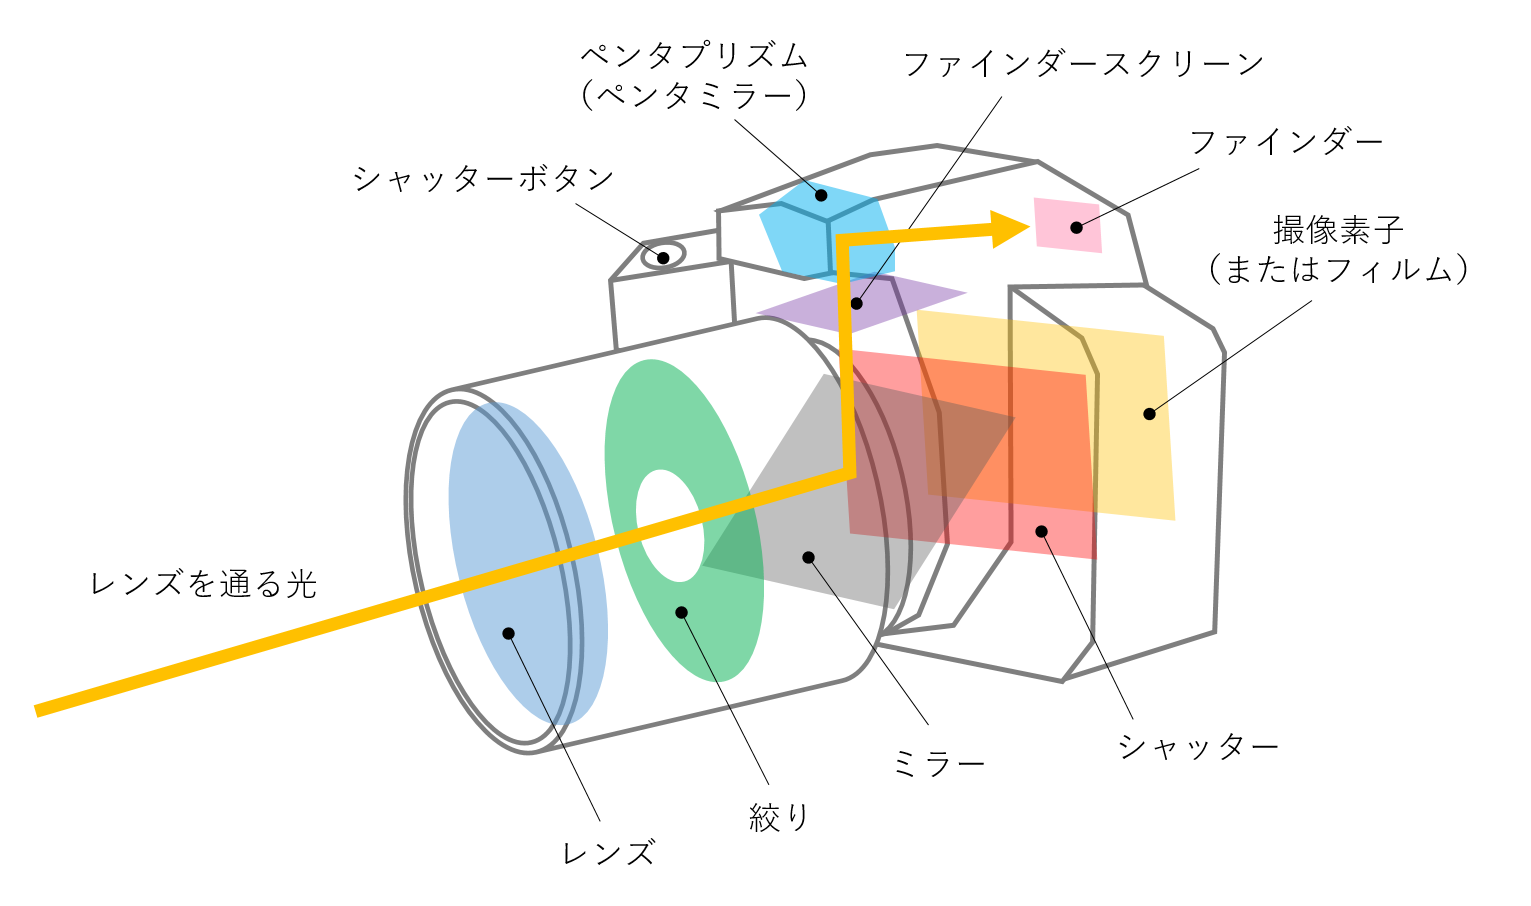 上の図が、一眼レフカメラの構造を示した概略図になります。